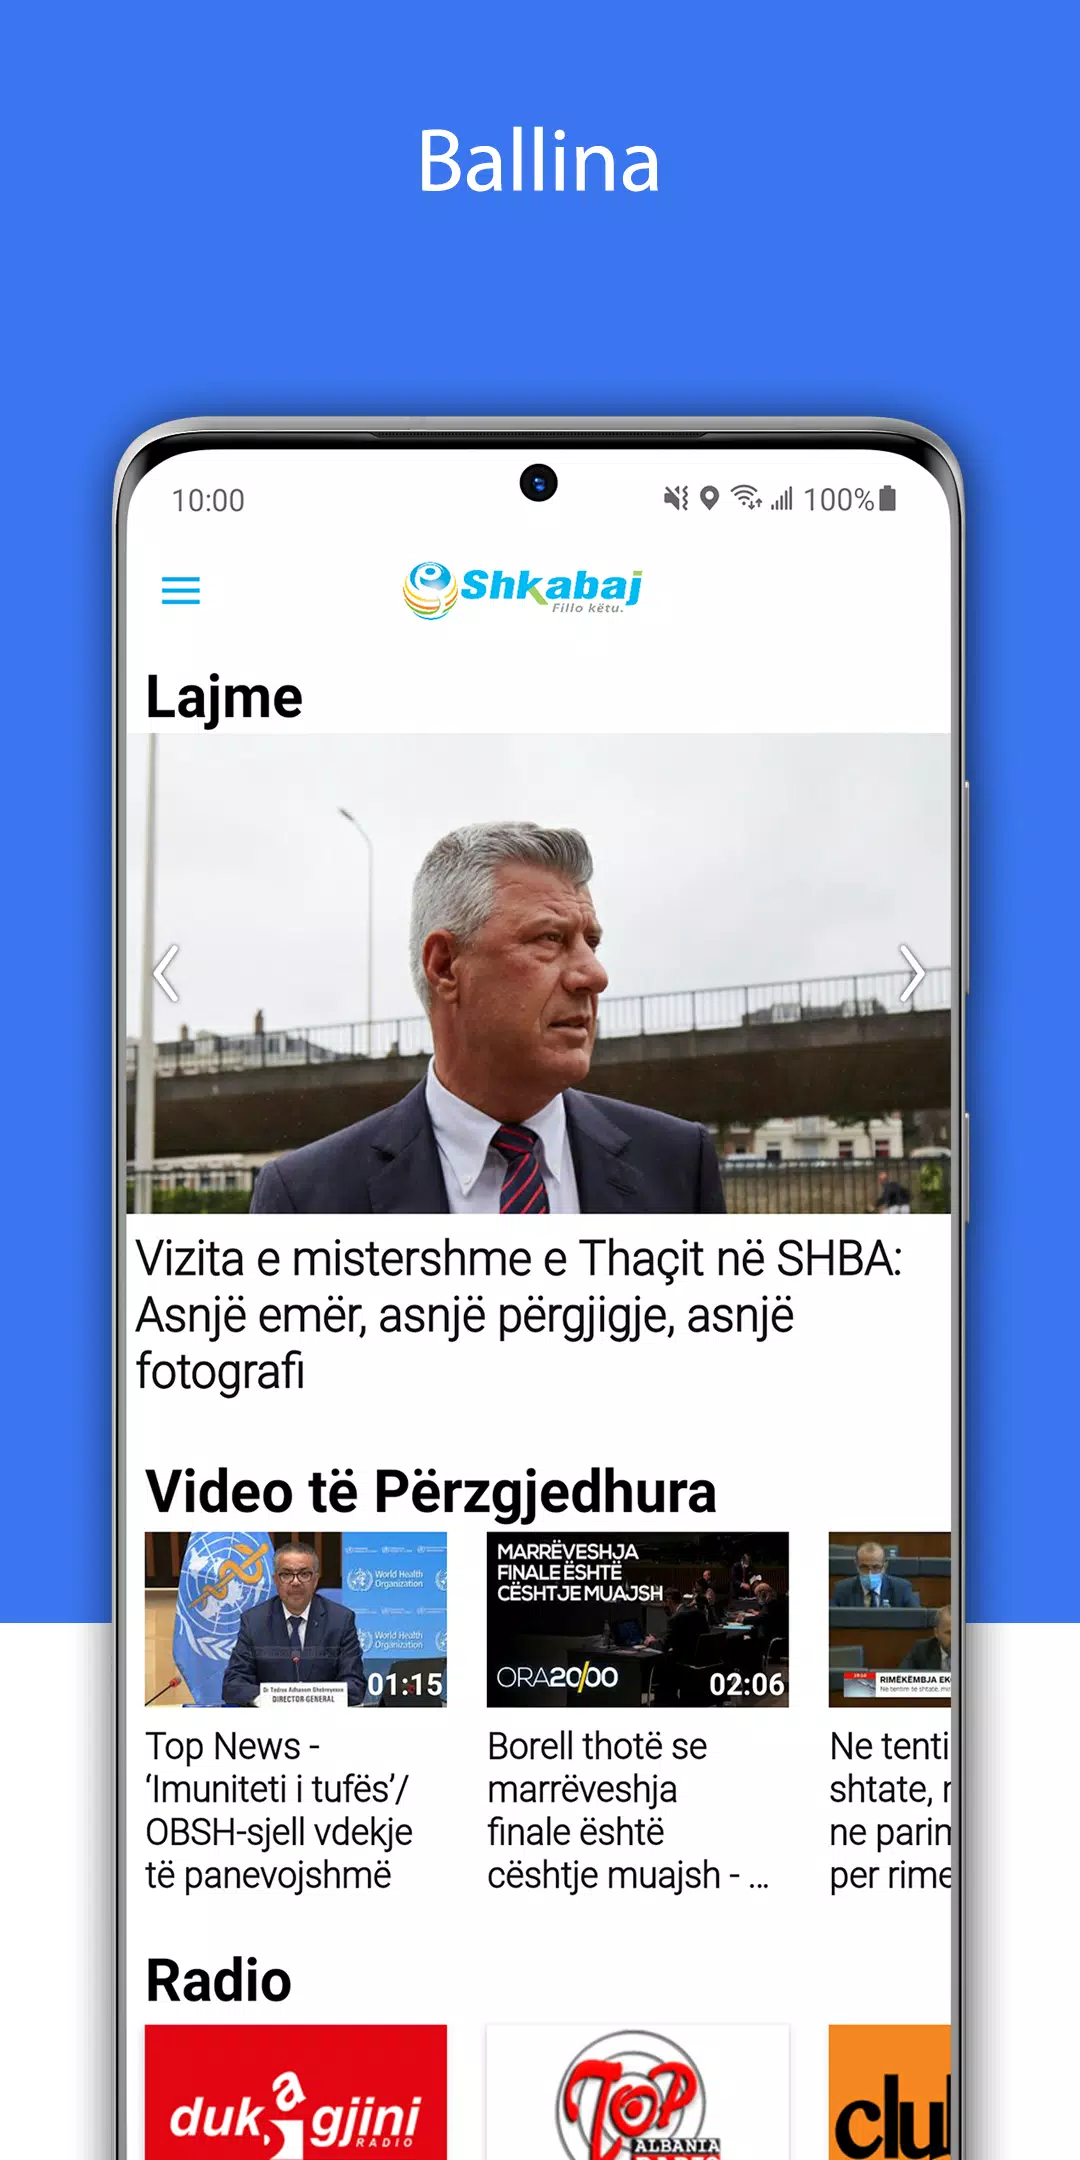 Shkabaj APK pour Android Télécharger